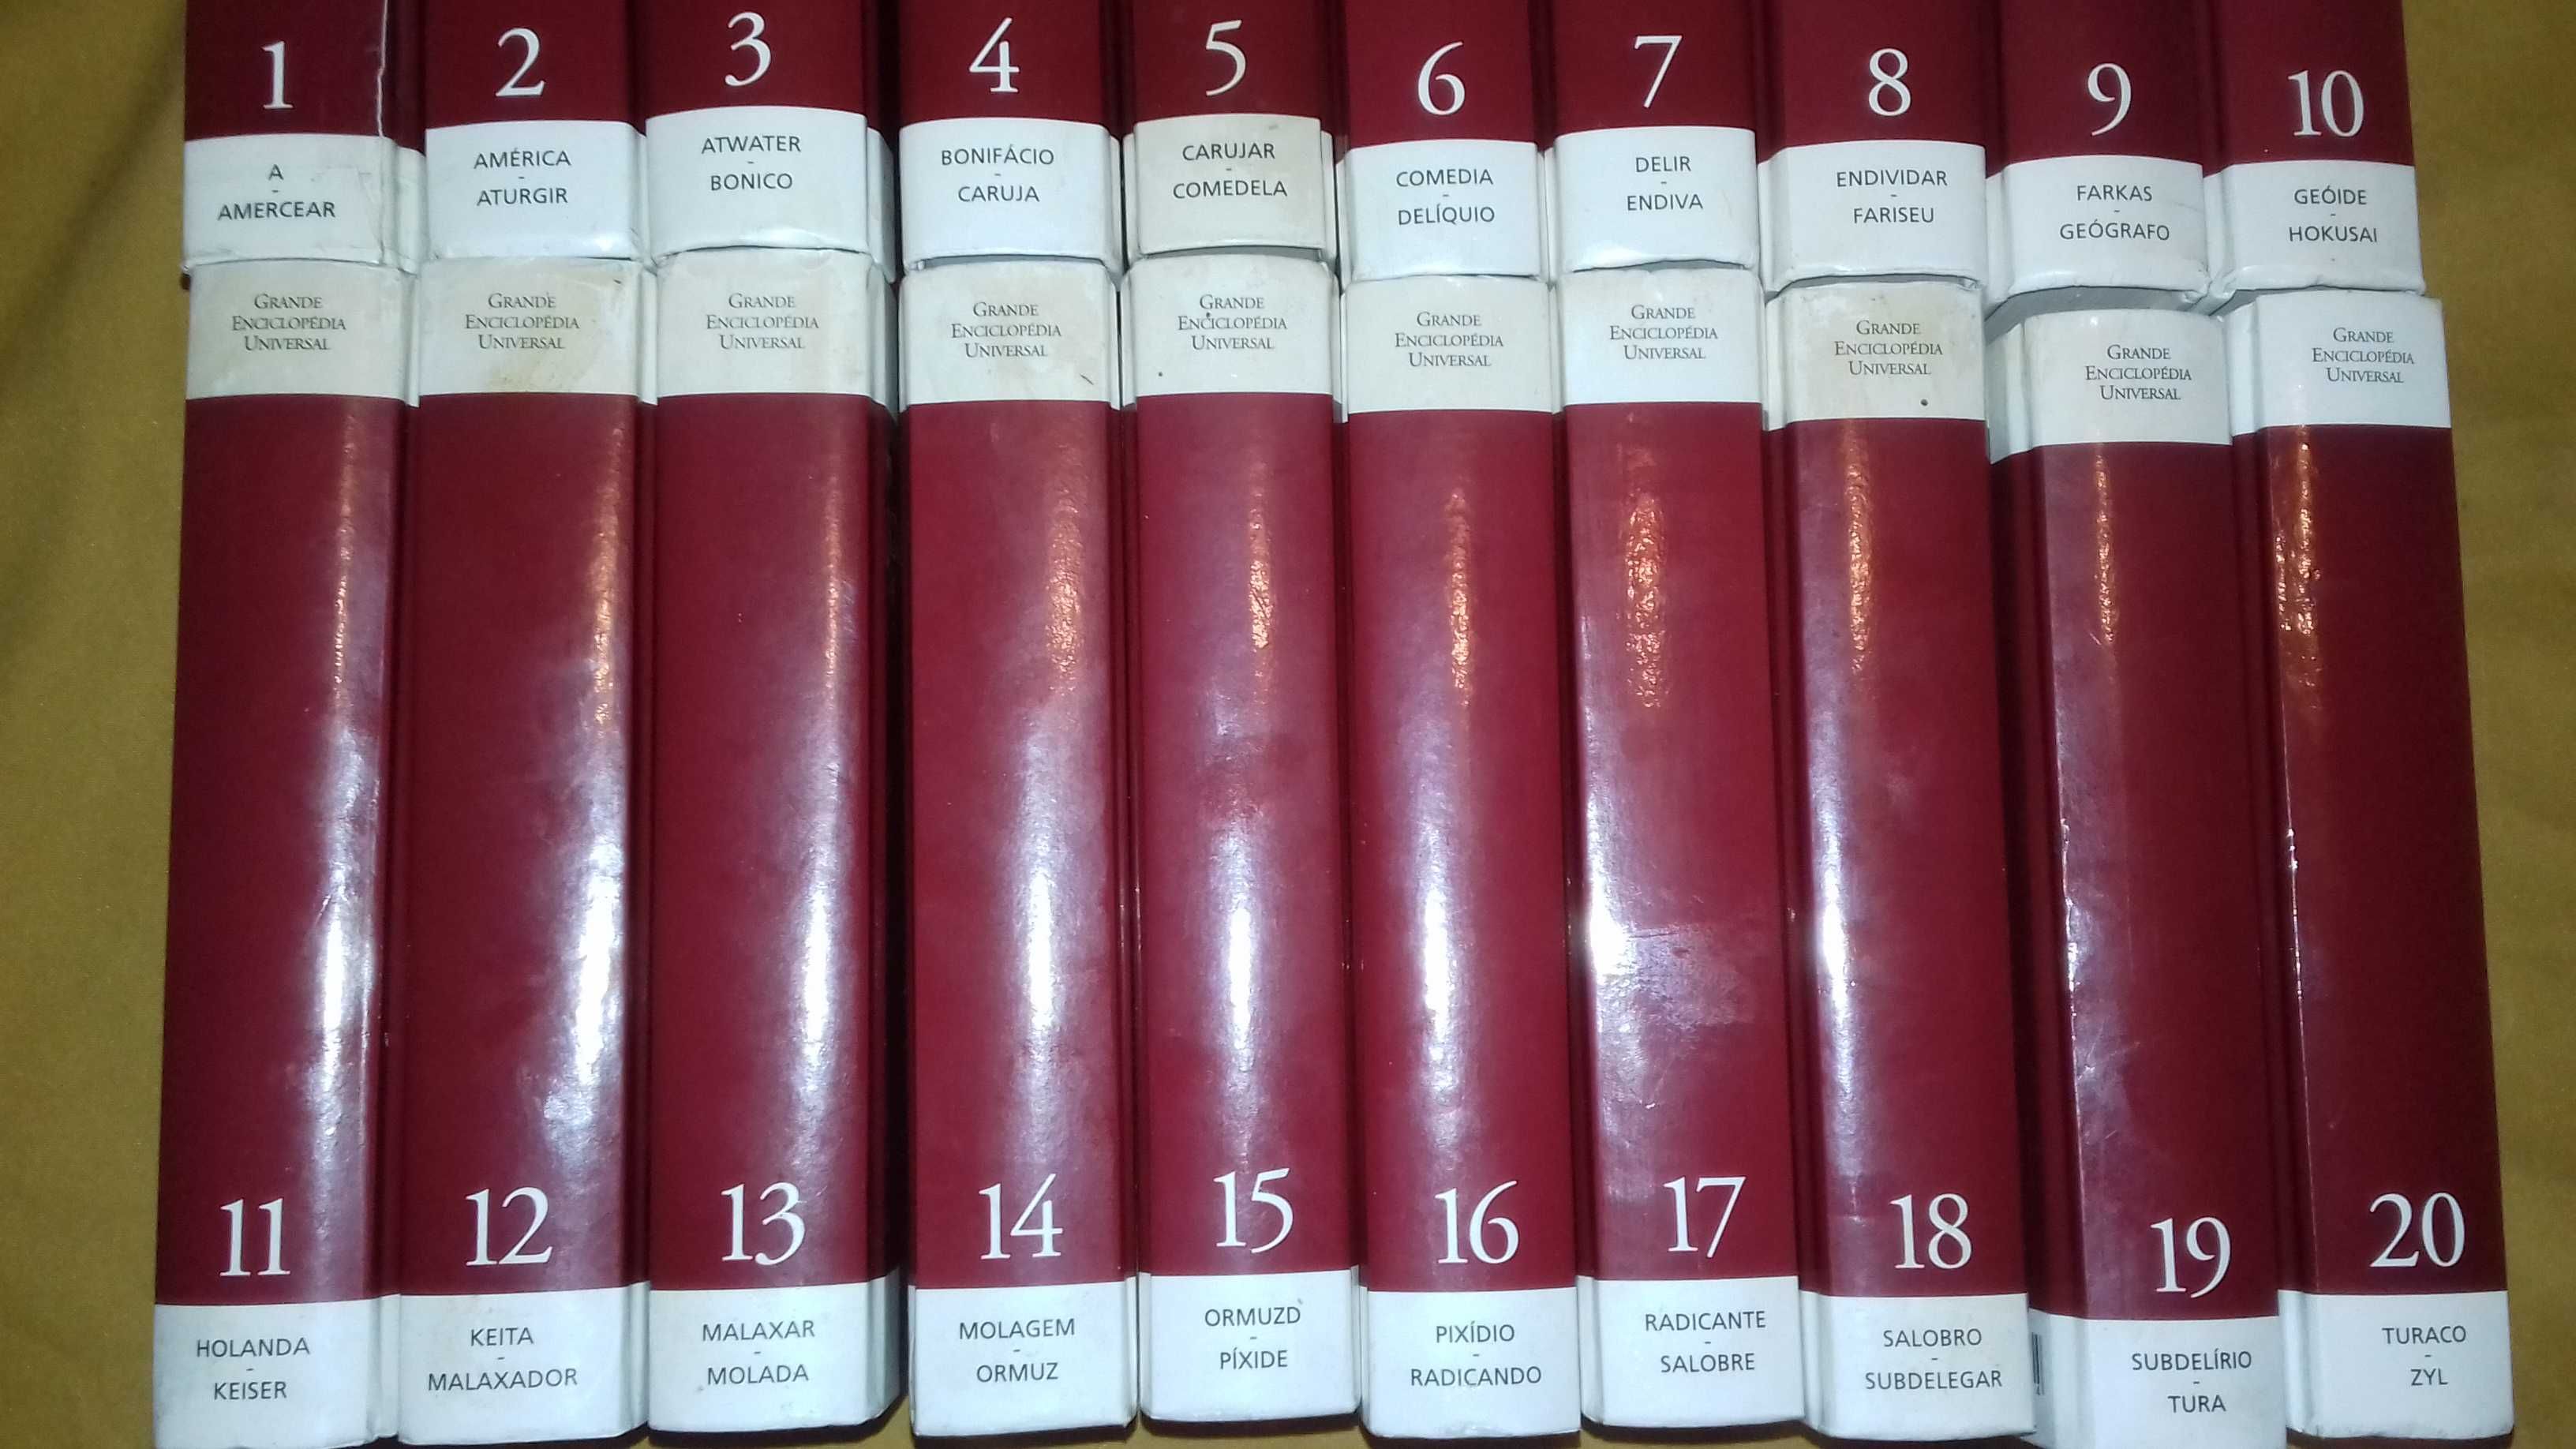 Enciclopédias Universal-20 e Camilo Castelo Branco-12